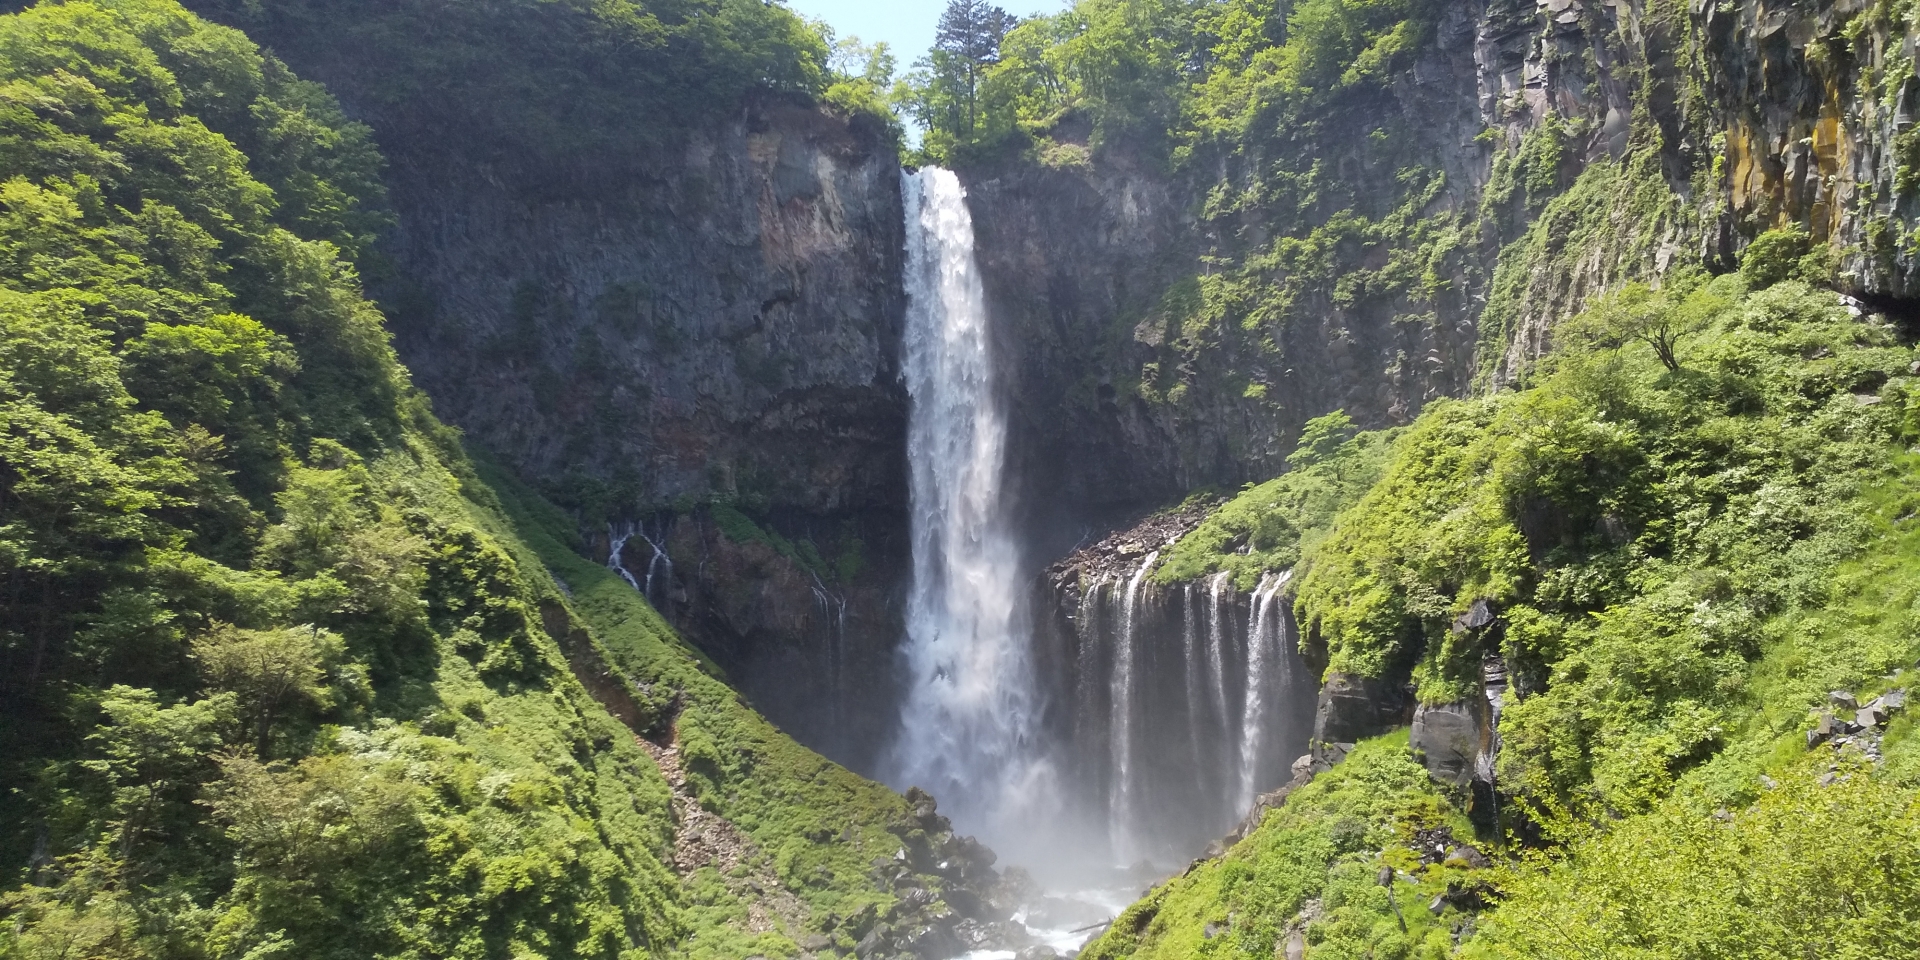  栃木県「華厳の滝」